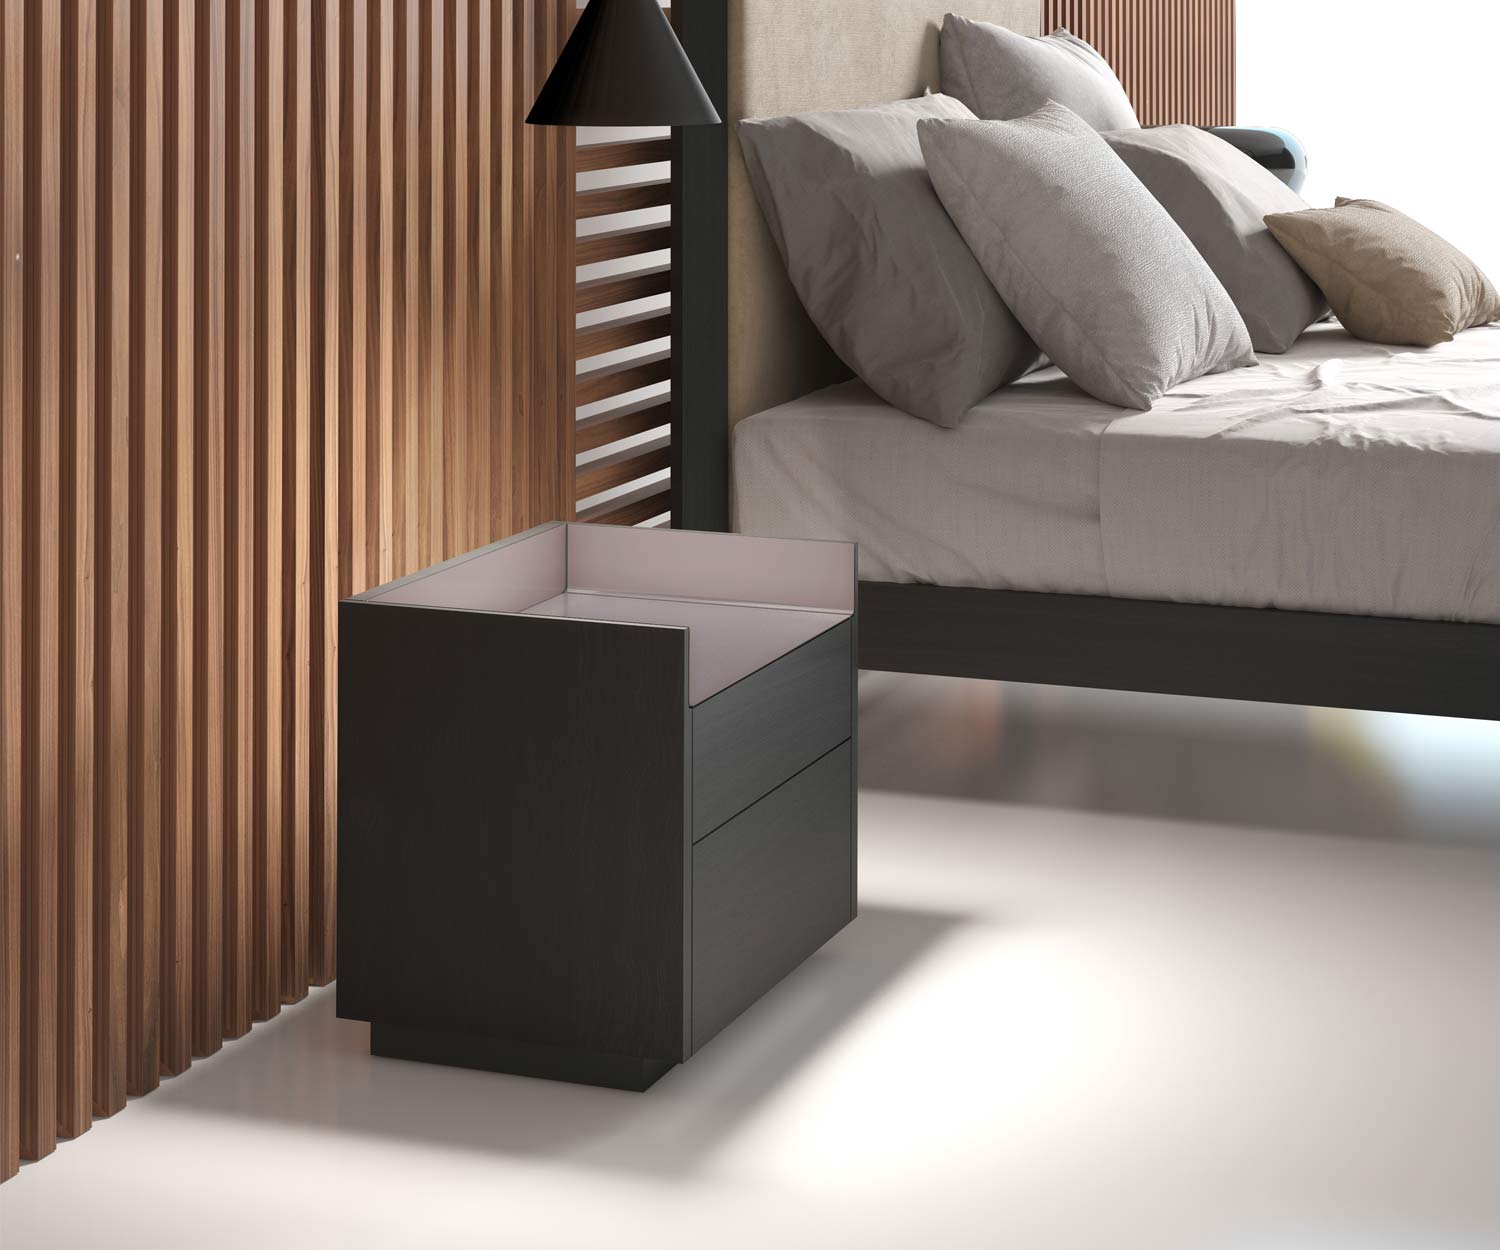 Table de nuit design de haute qualité dans la chambre à coucher avec deux tiroirs foncés